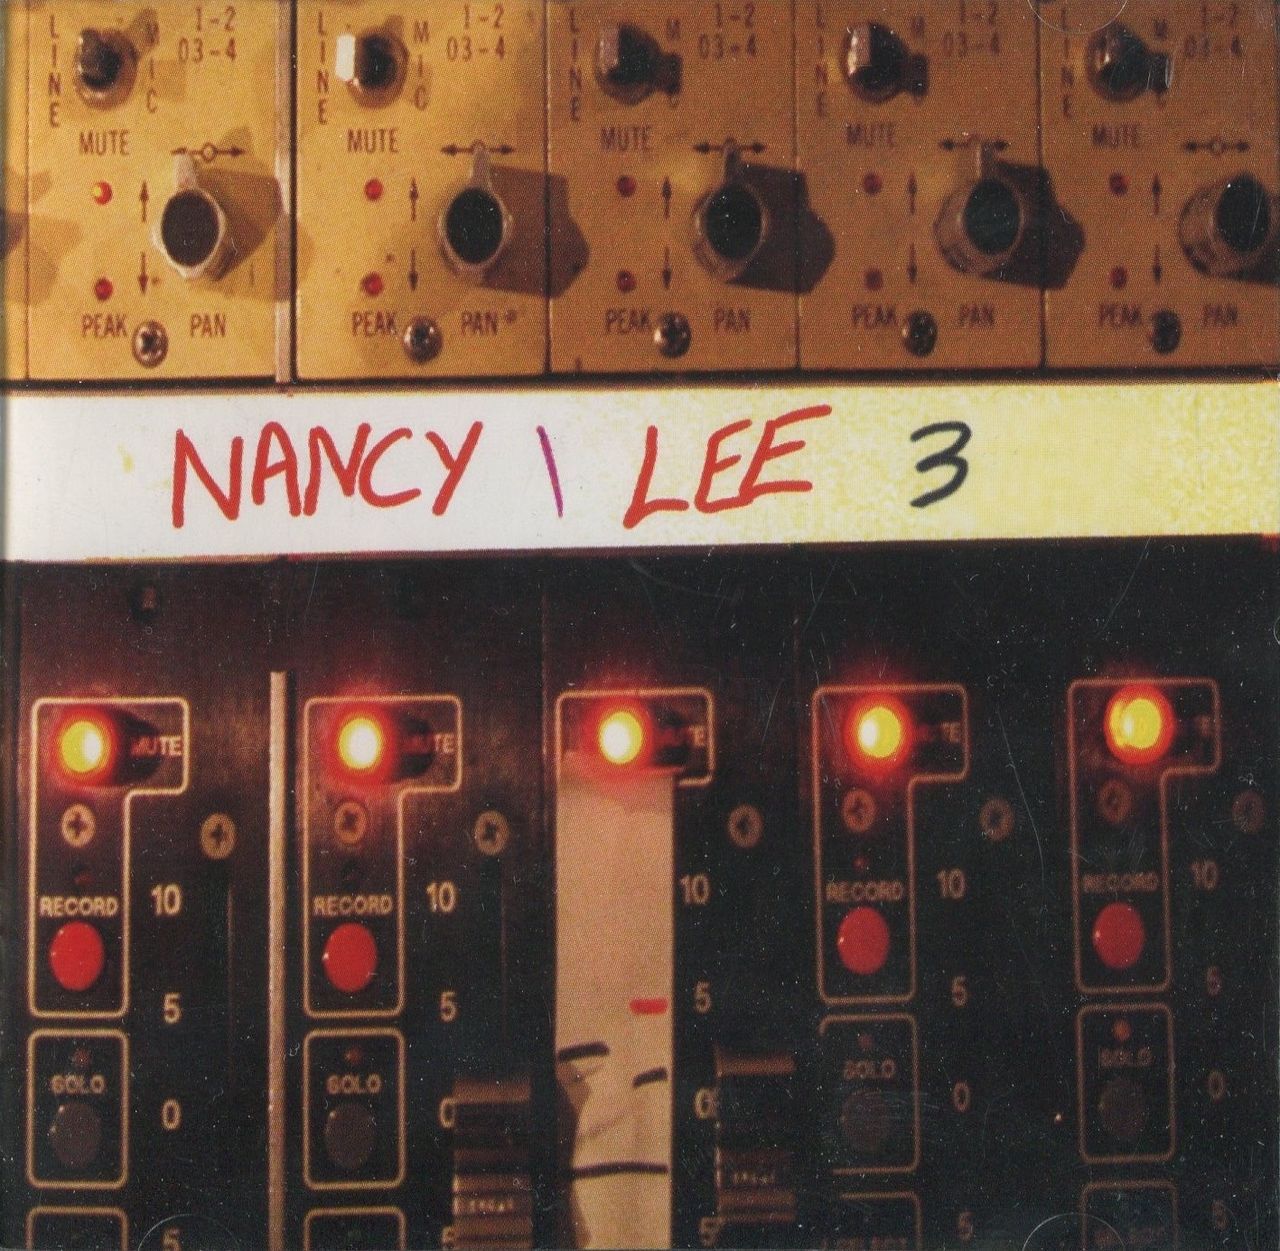 Nancy & Lee 3 album art